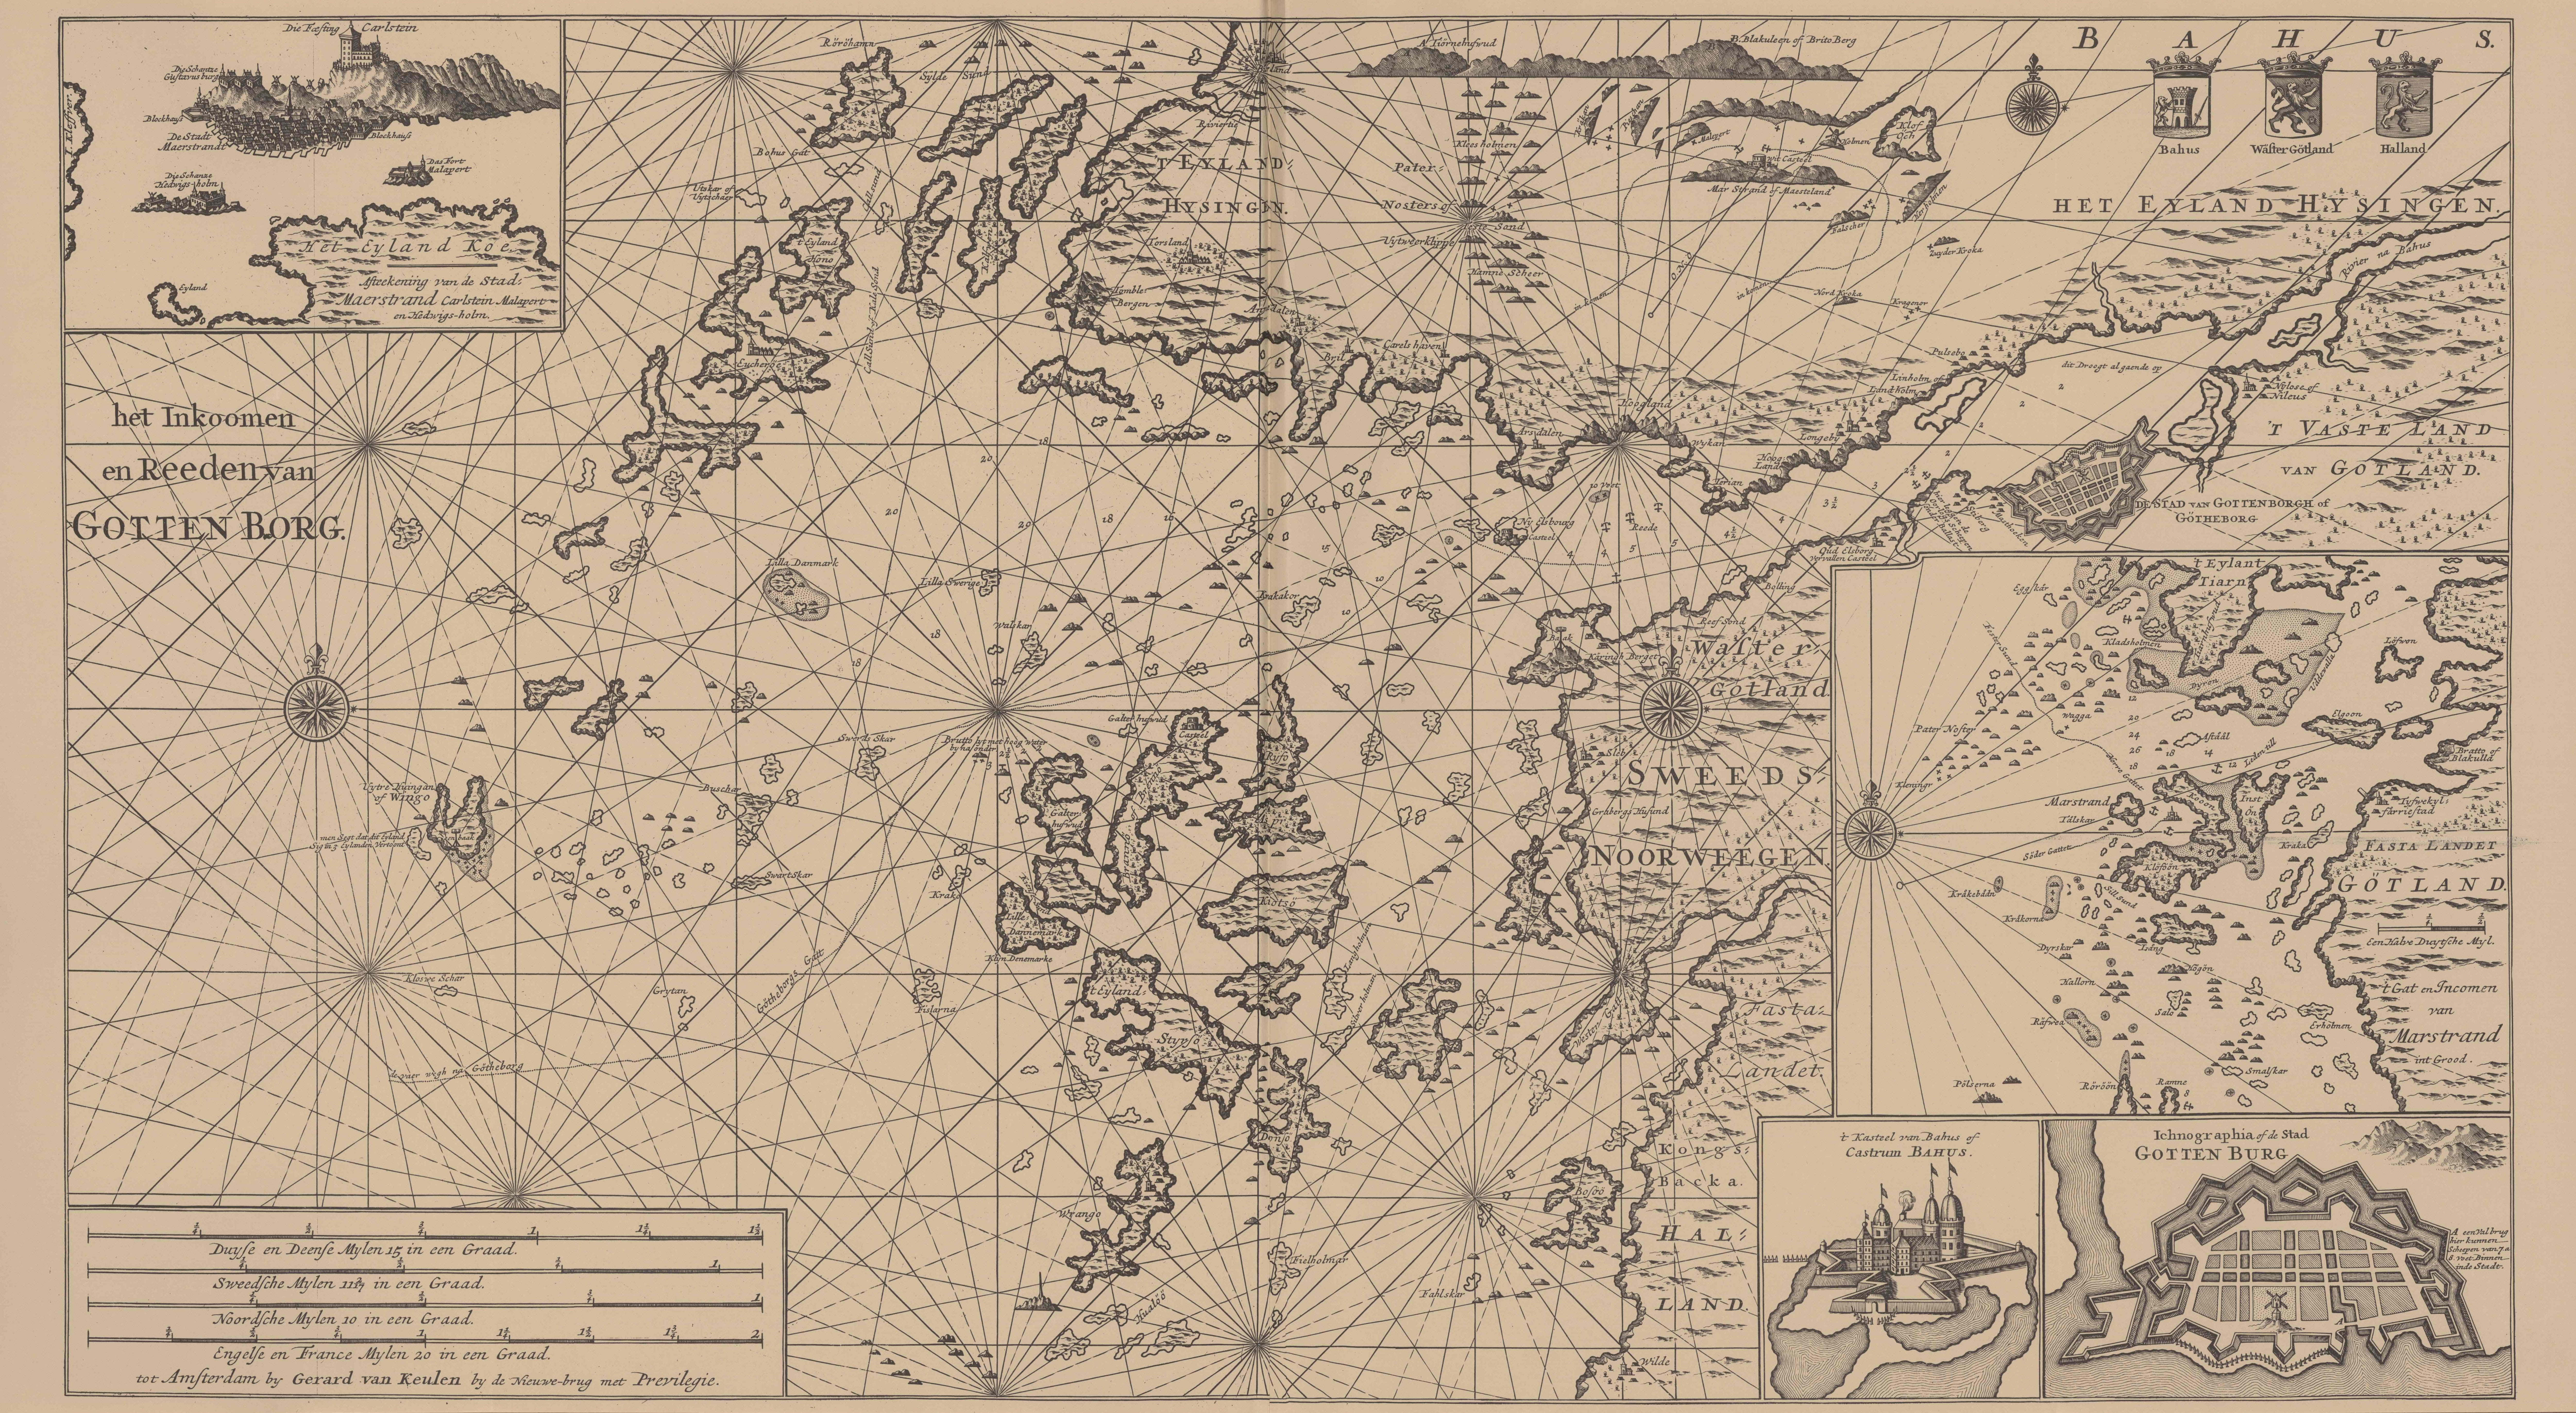 Van Keulen (1728, kaart 13)